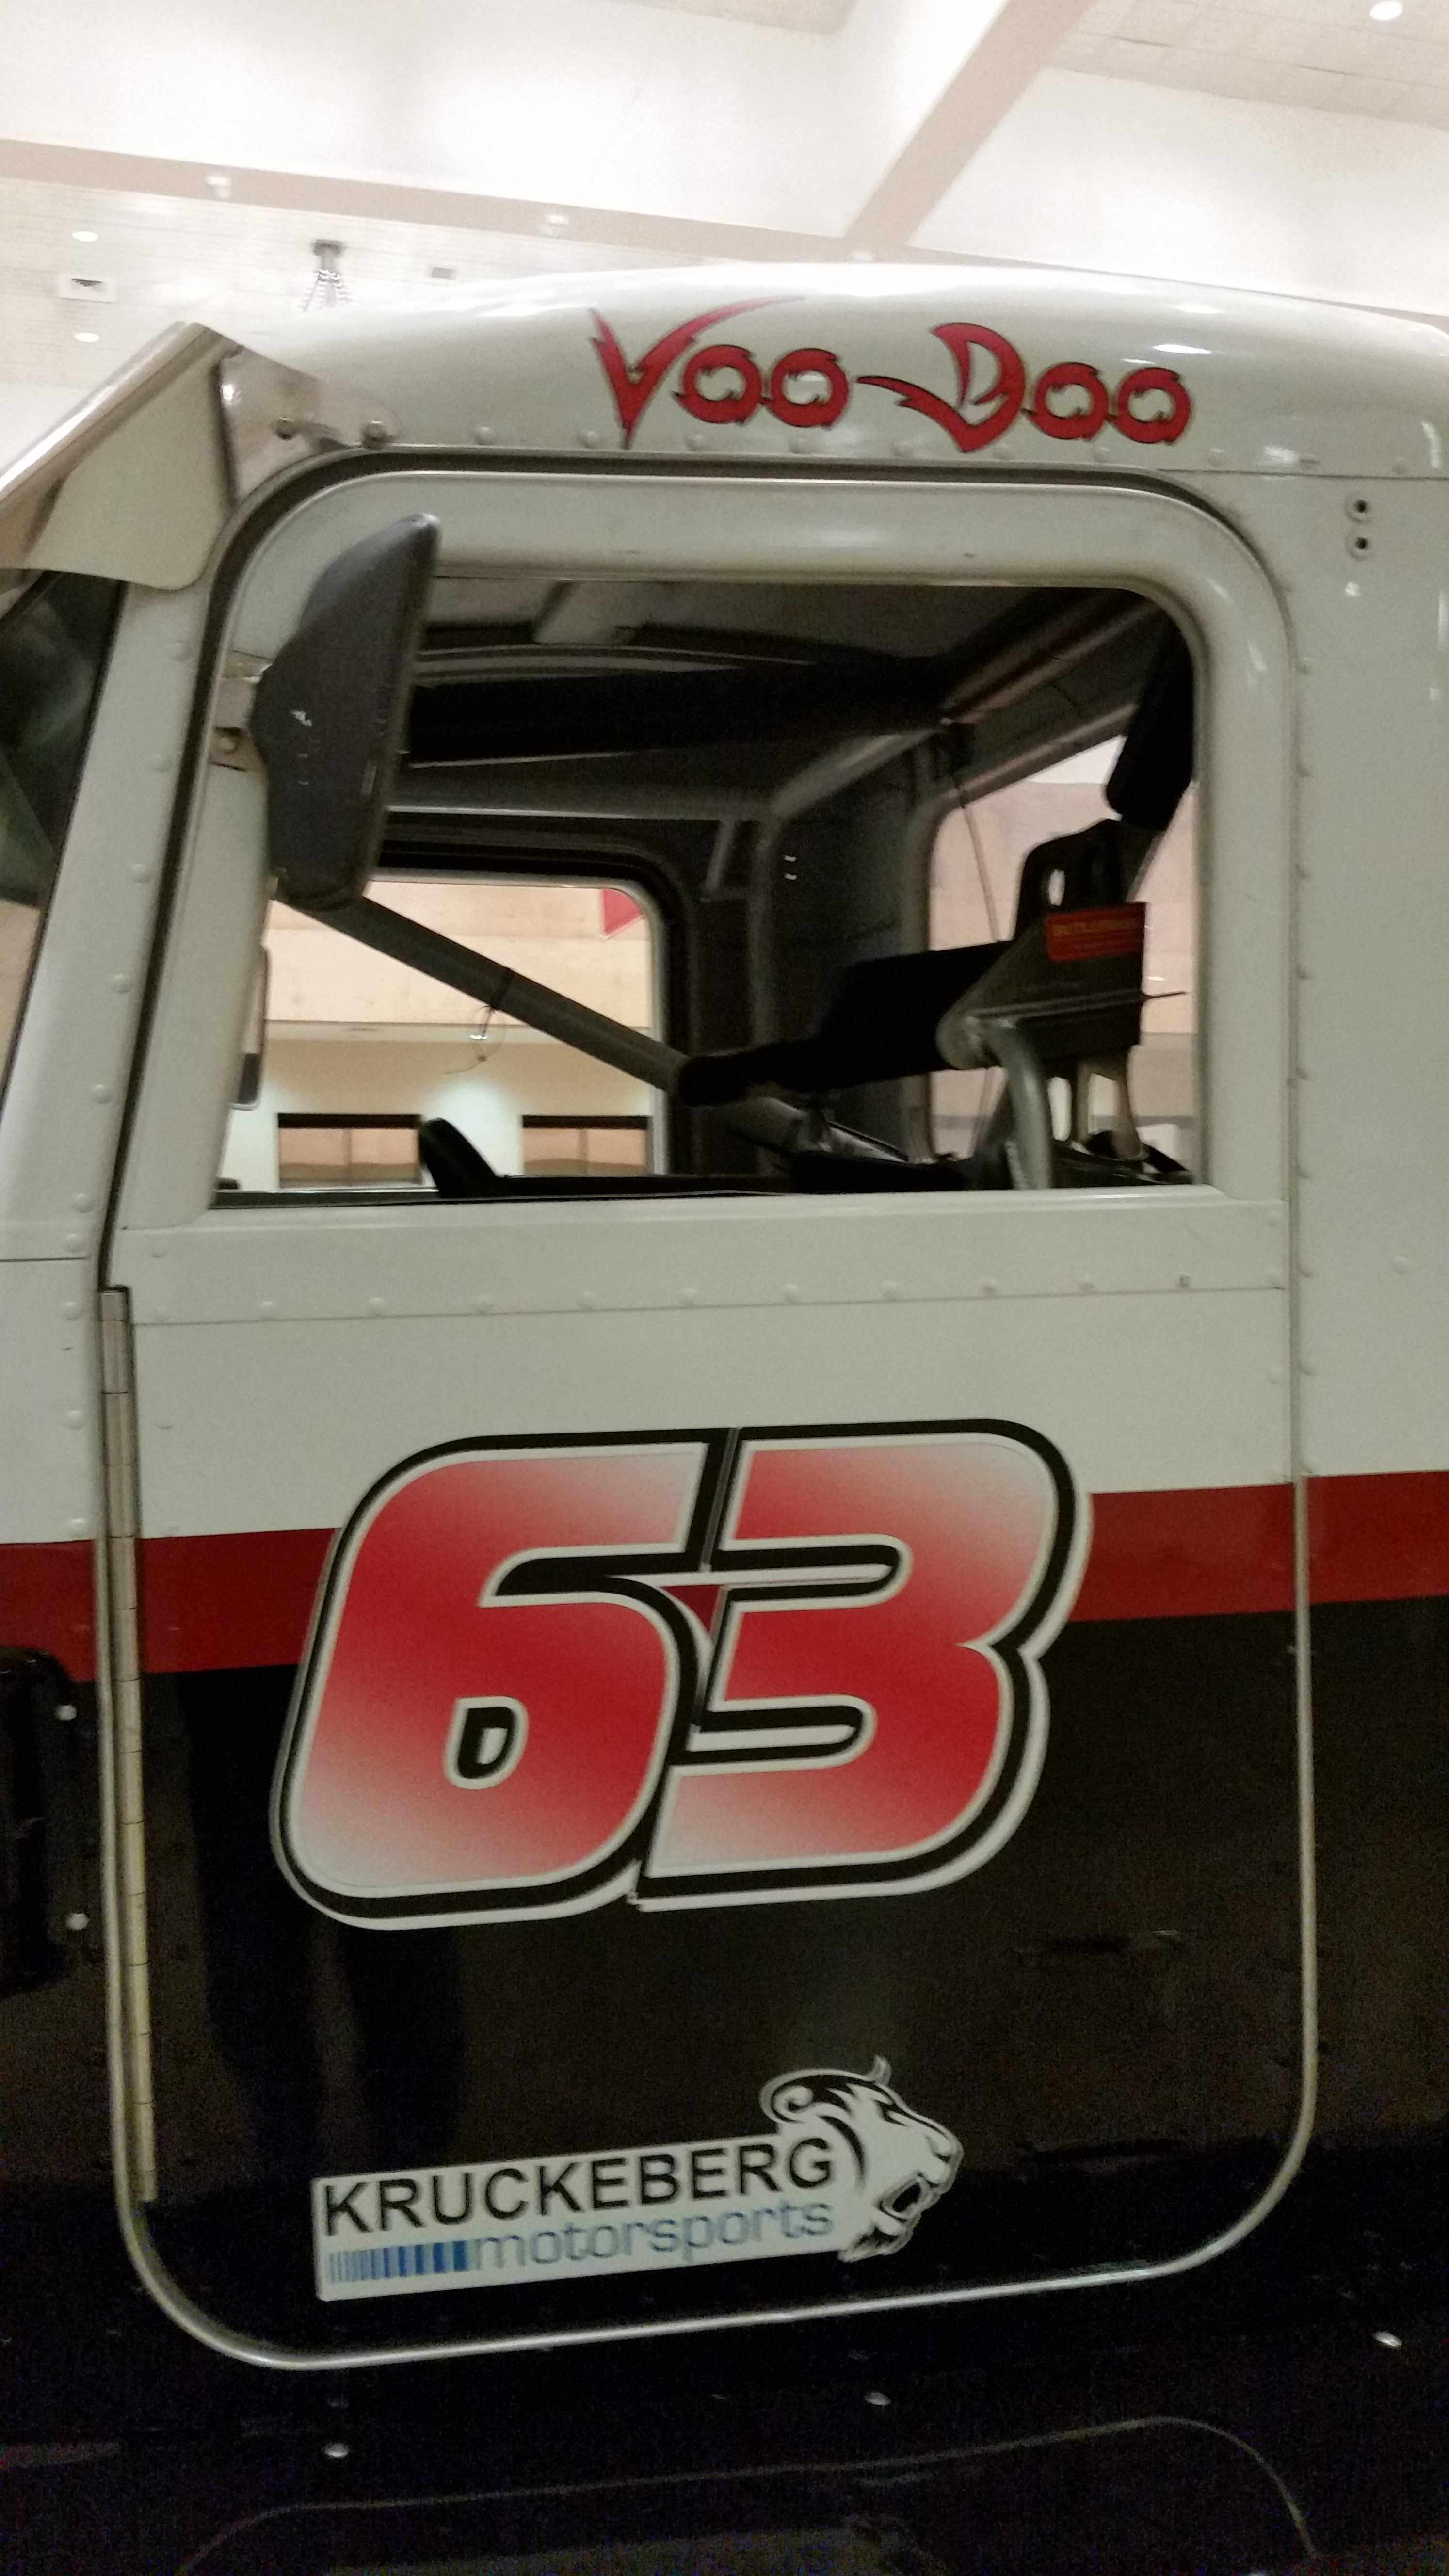 63 semi truck race vehicle's door